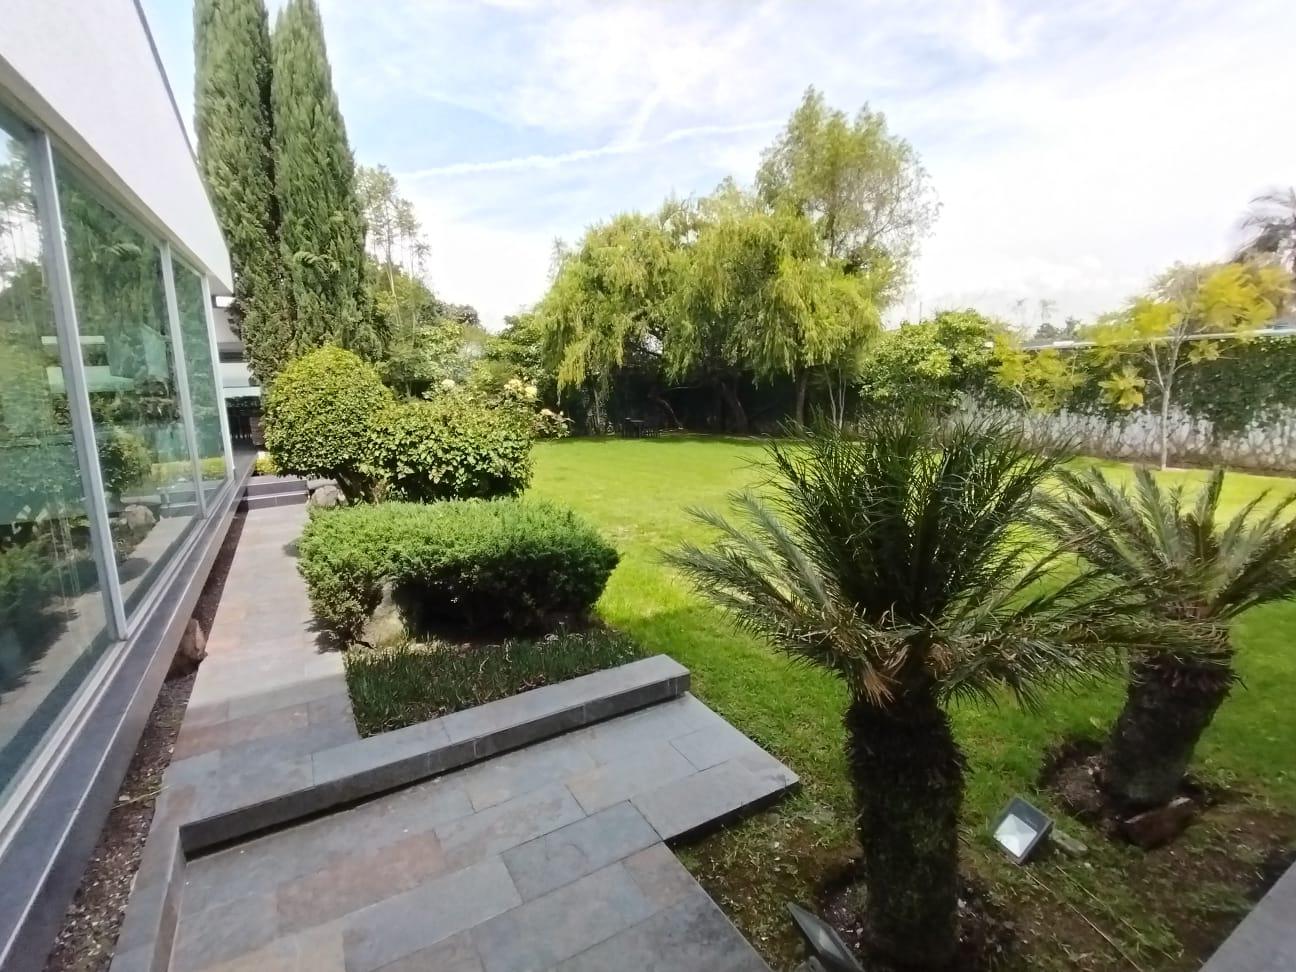 Casa en Venta, independiente de 450m  con jardín de ensueño  Los Chillos, Urbanización exclusiva.